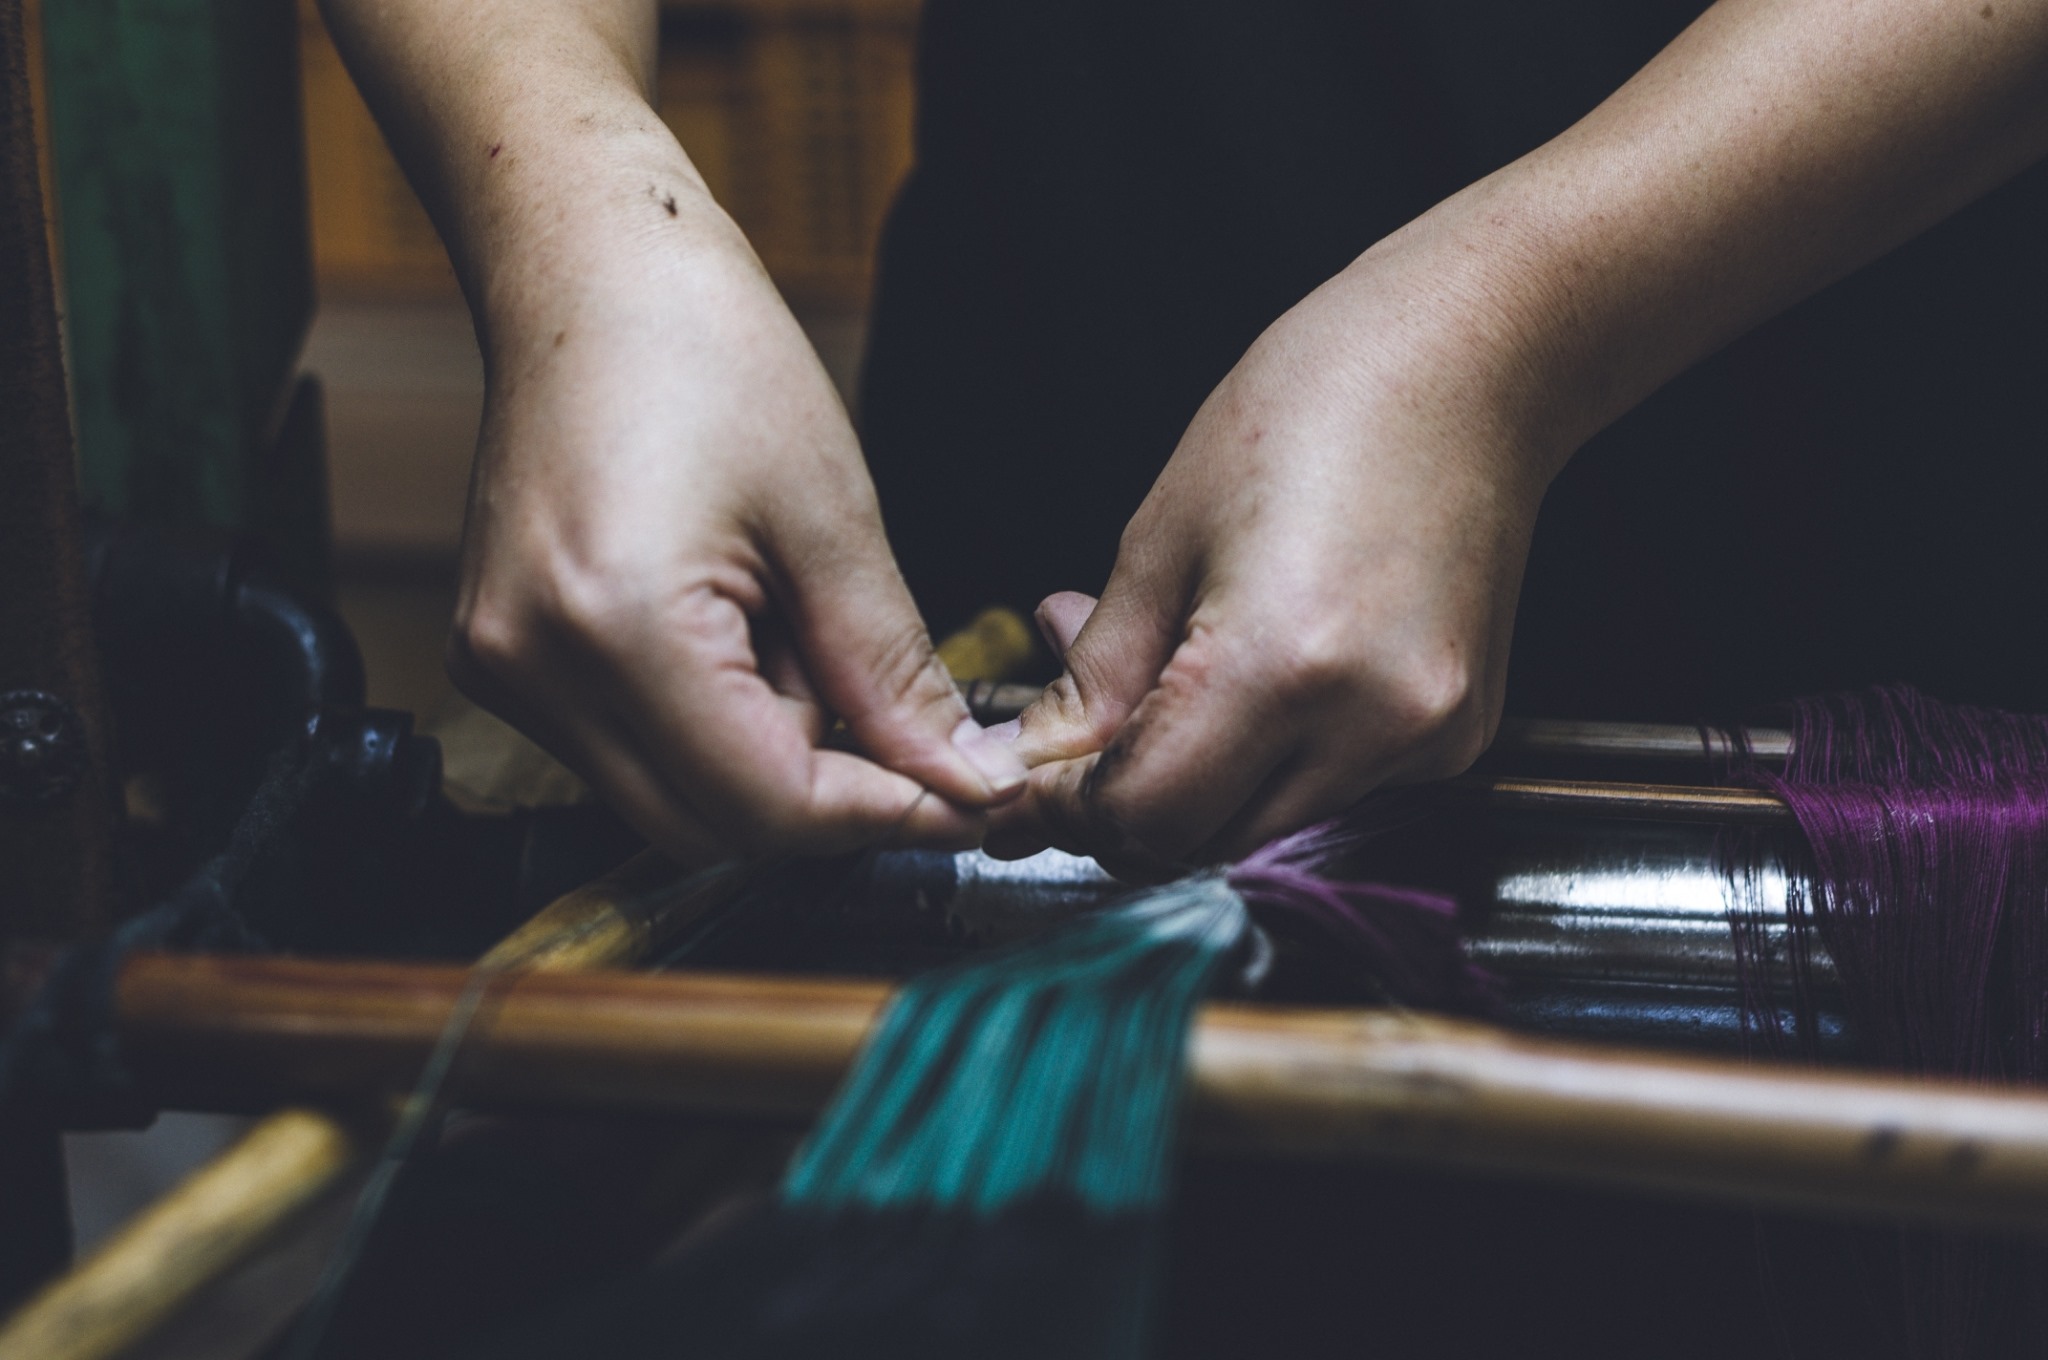 久留米絣 丸亀絣織物 | 丸亀絣織物は伝統久留米絣の織元です。5代に 